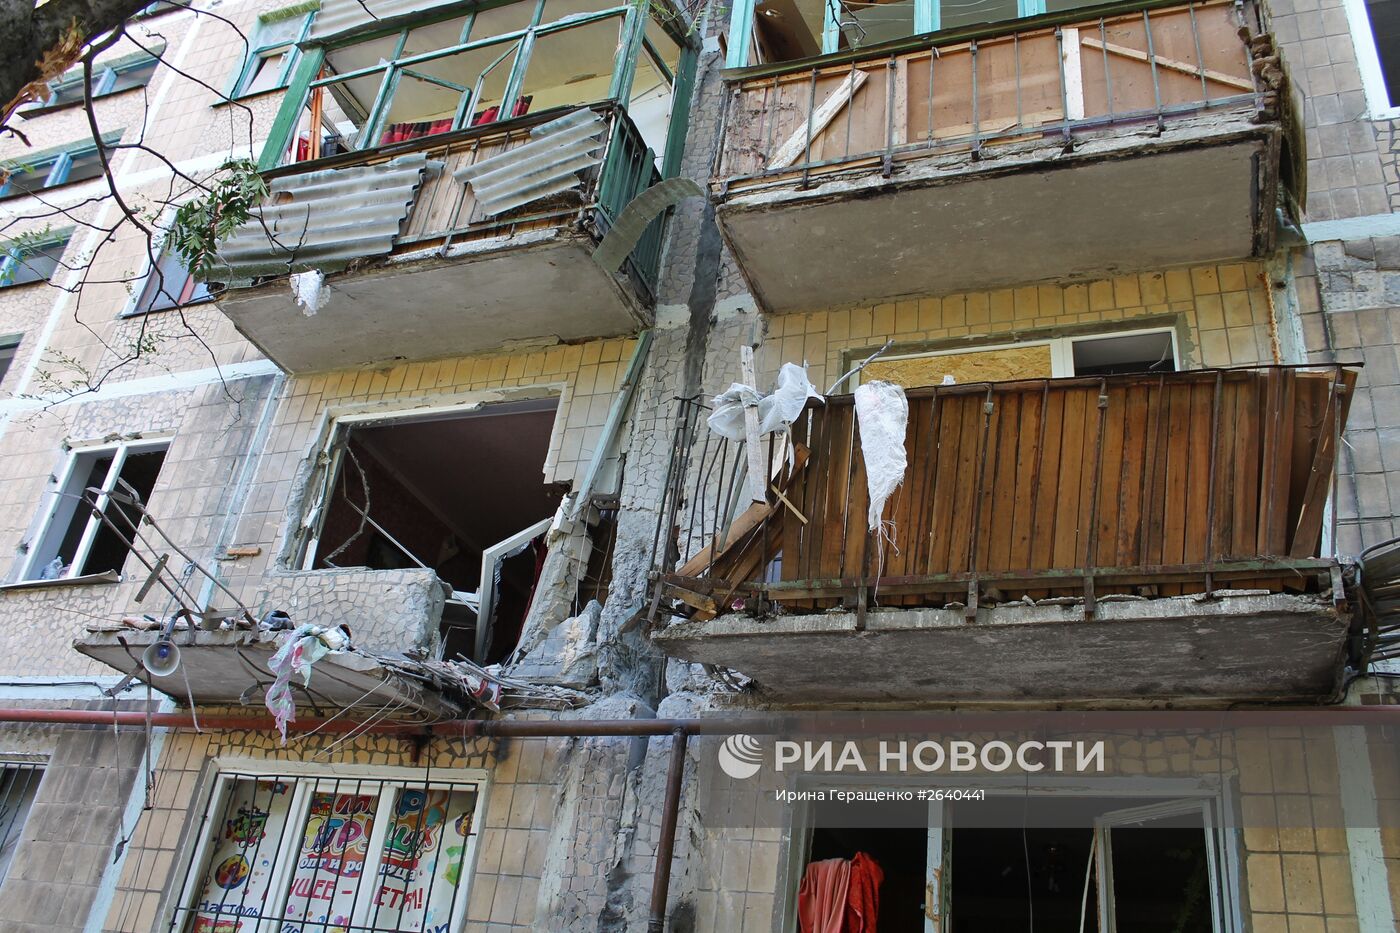 Последствия обстрела города Горловки Донецкой области